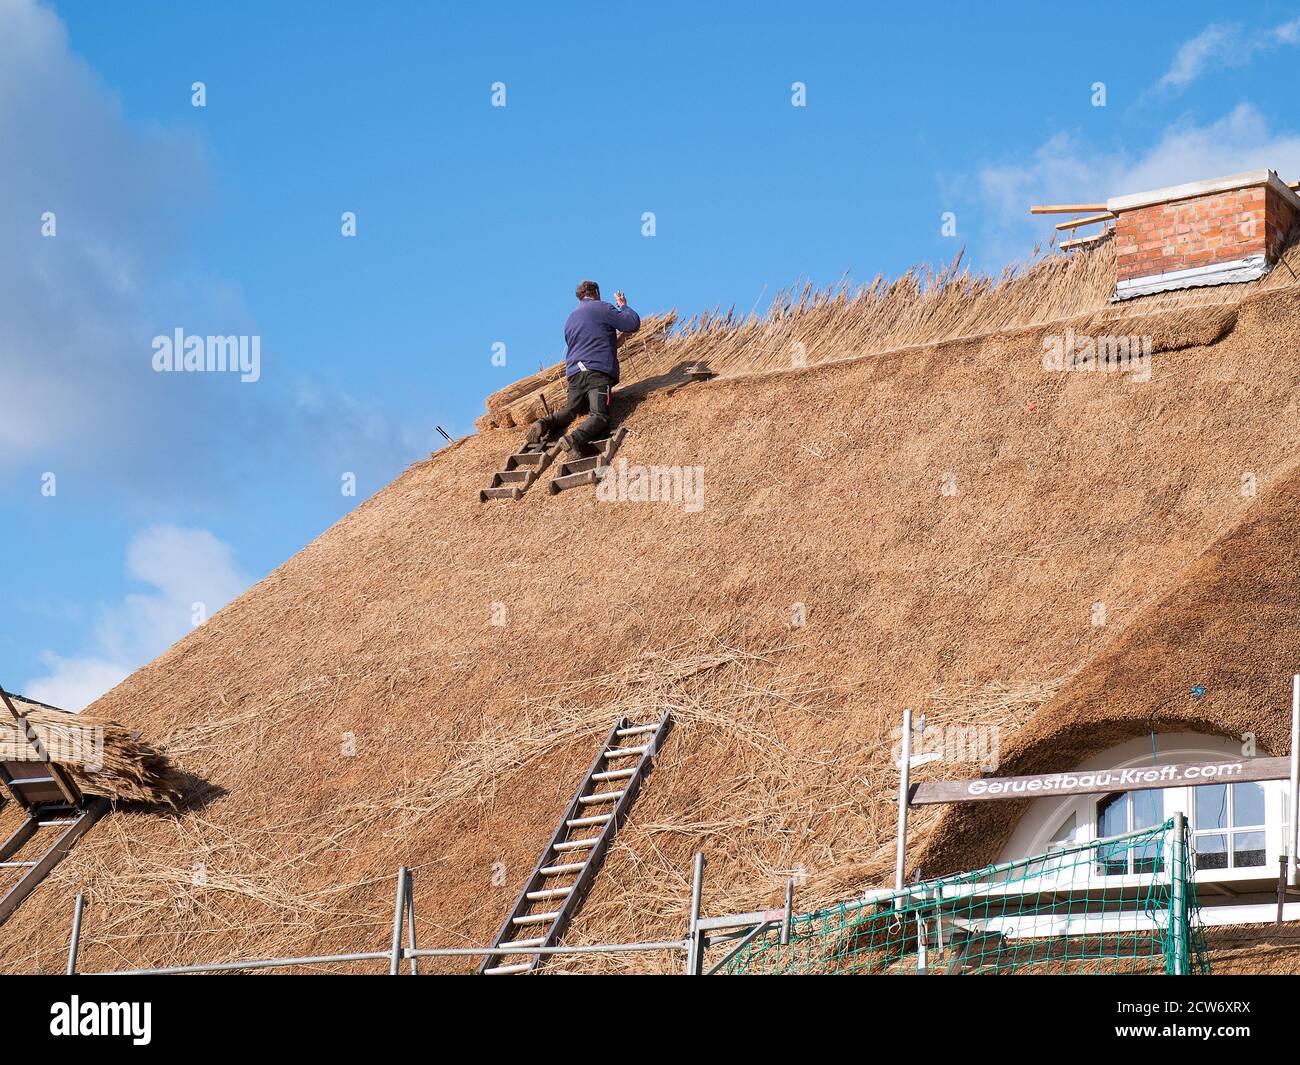 Des Thatchers travaillent à la restauration du toit de chaume d'une ancienne ferme à Bütlingen, Niedersachsen, Allemagne. Banque D'Images